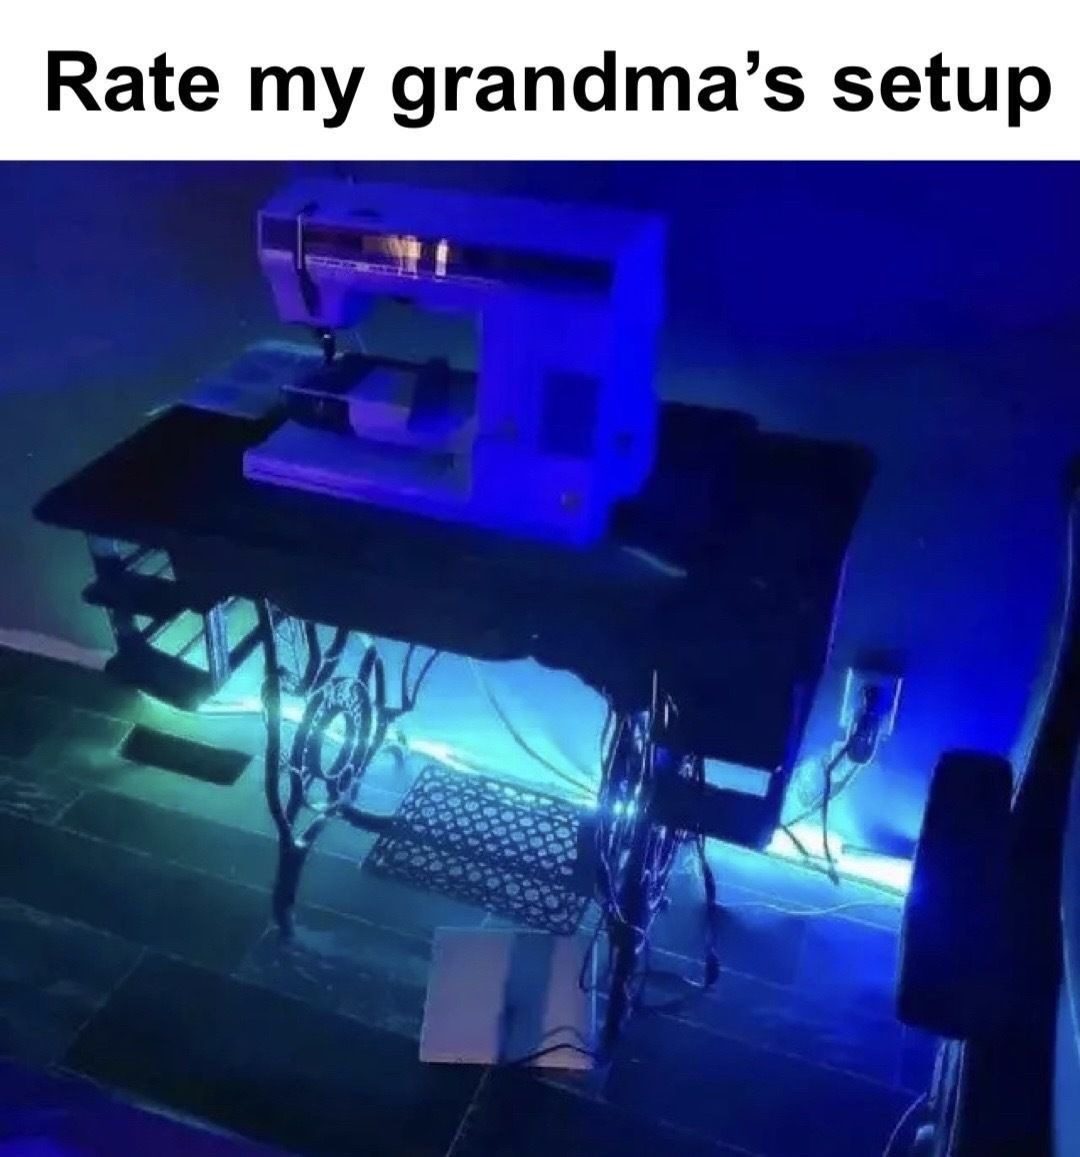 grandma’s setup meme